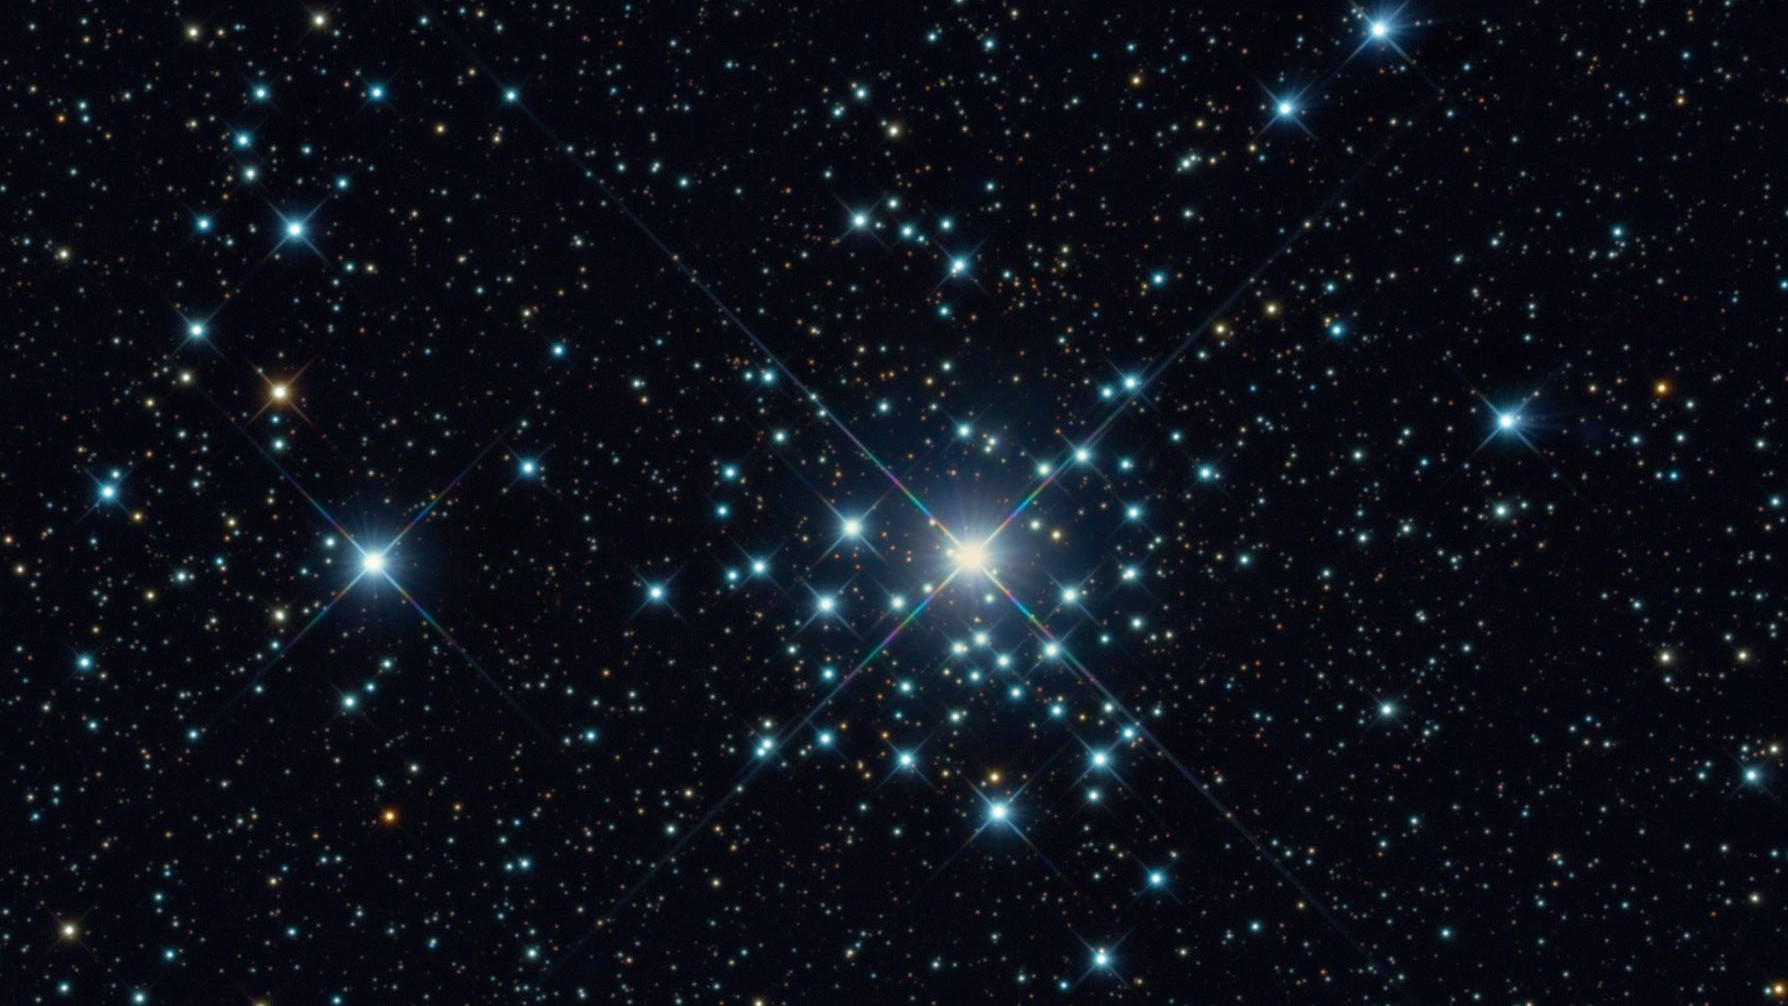 Zdjęcie gromady gwiazd NGC 2362 w gwiazdozbiorze Wielkiego Psa wykonane za pomocą 20-calowego teleskopu RC przy ogniskowej 4492mm. Bernhard Hubl oraz zespół CEDIC / CCD Guide